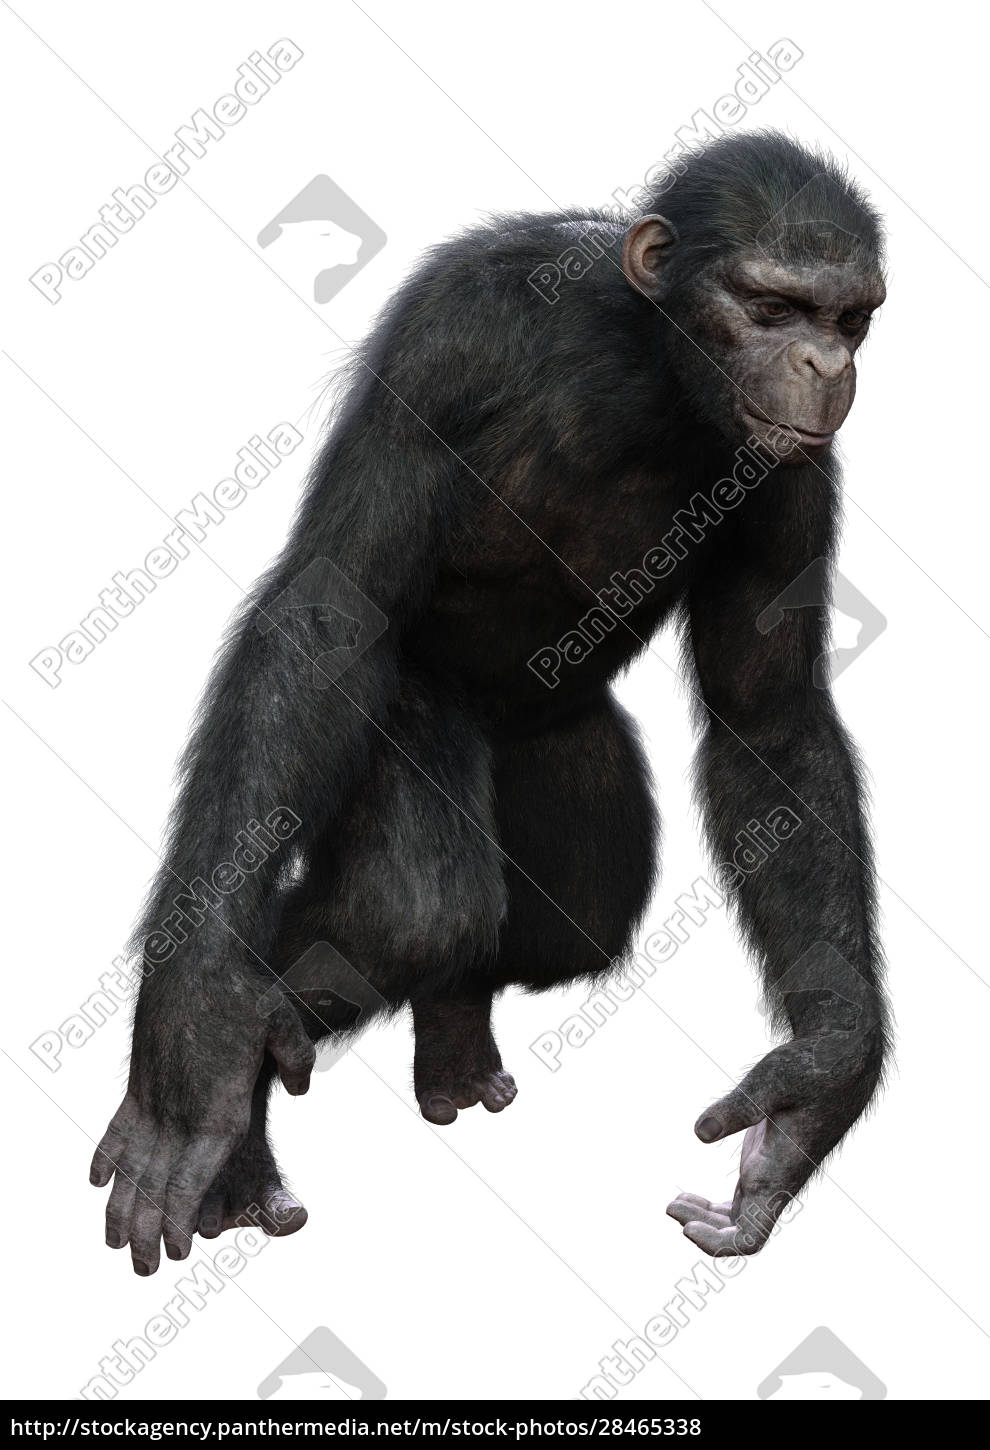 75.573 imagens, fotos stock, objetos 3D e vetores de Chimpanzé